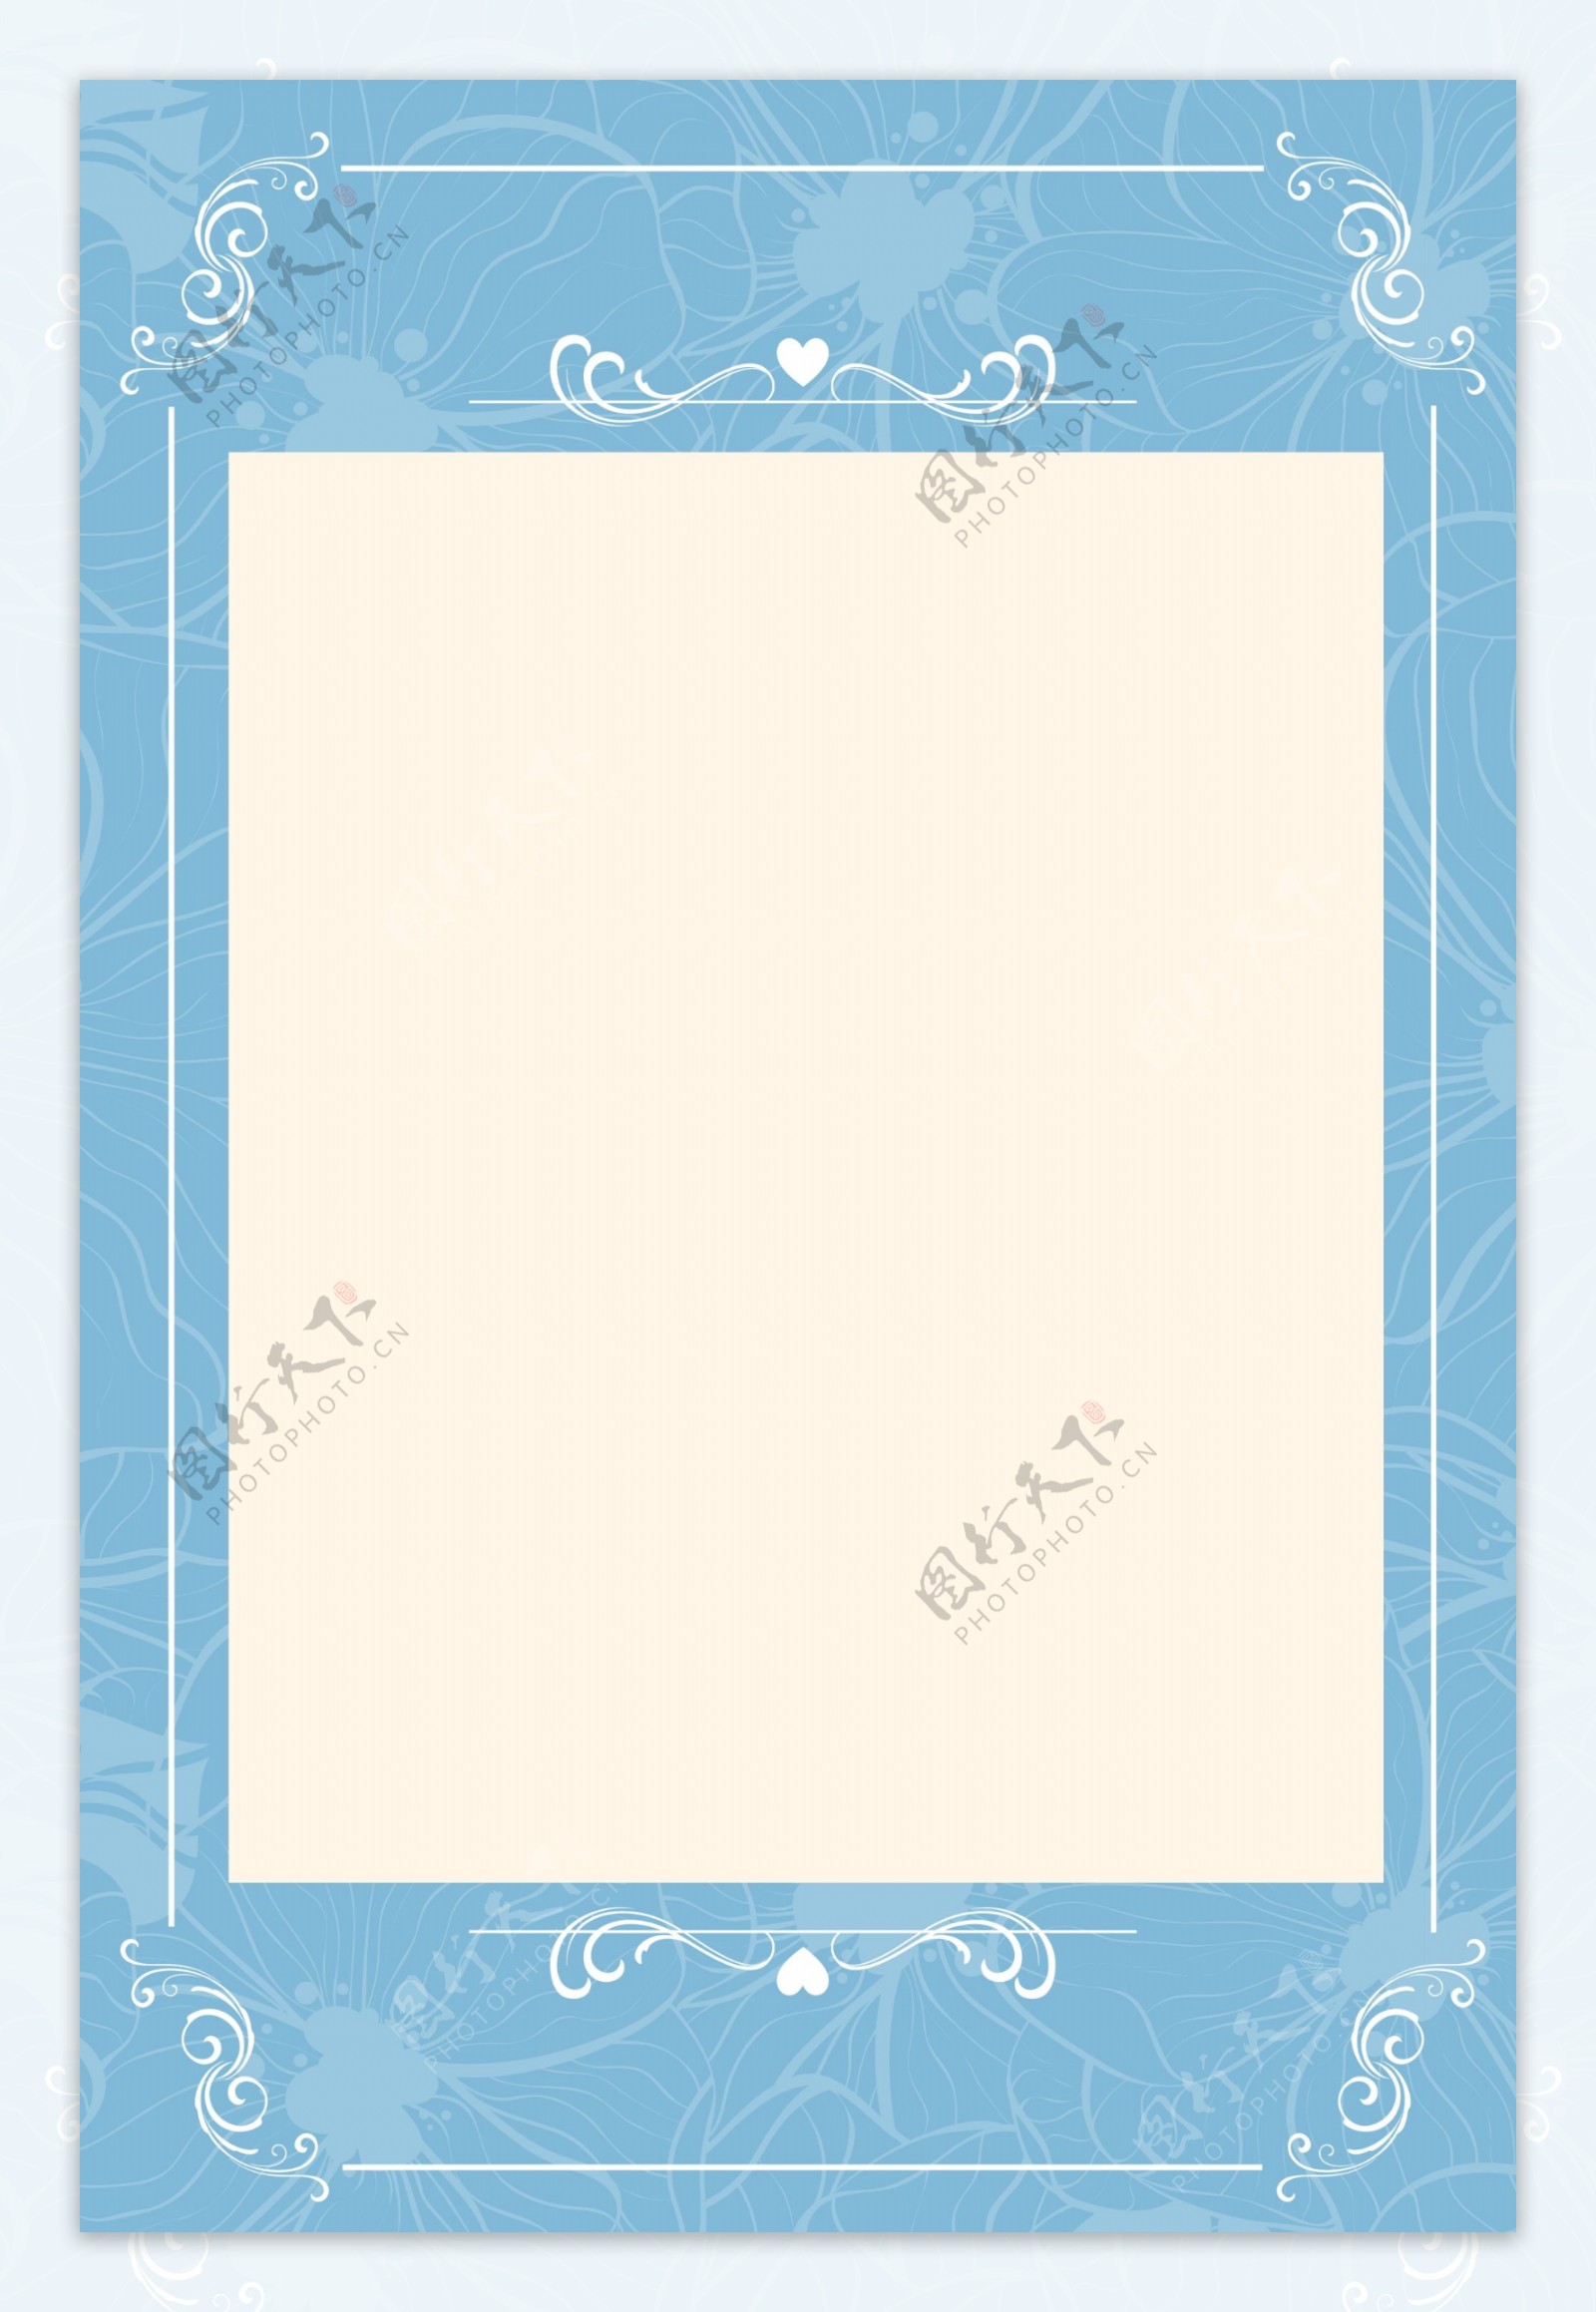 蓝色矢量欧式花纹婚礼水牌背景素材